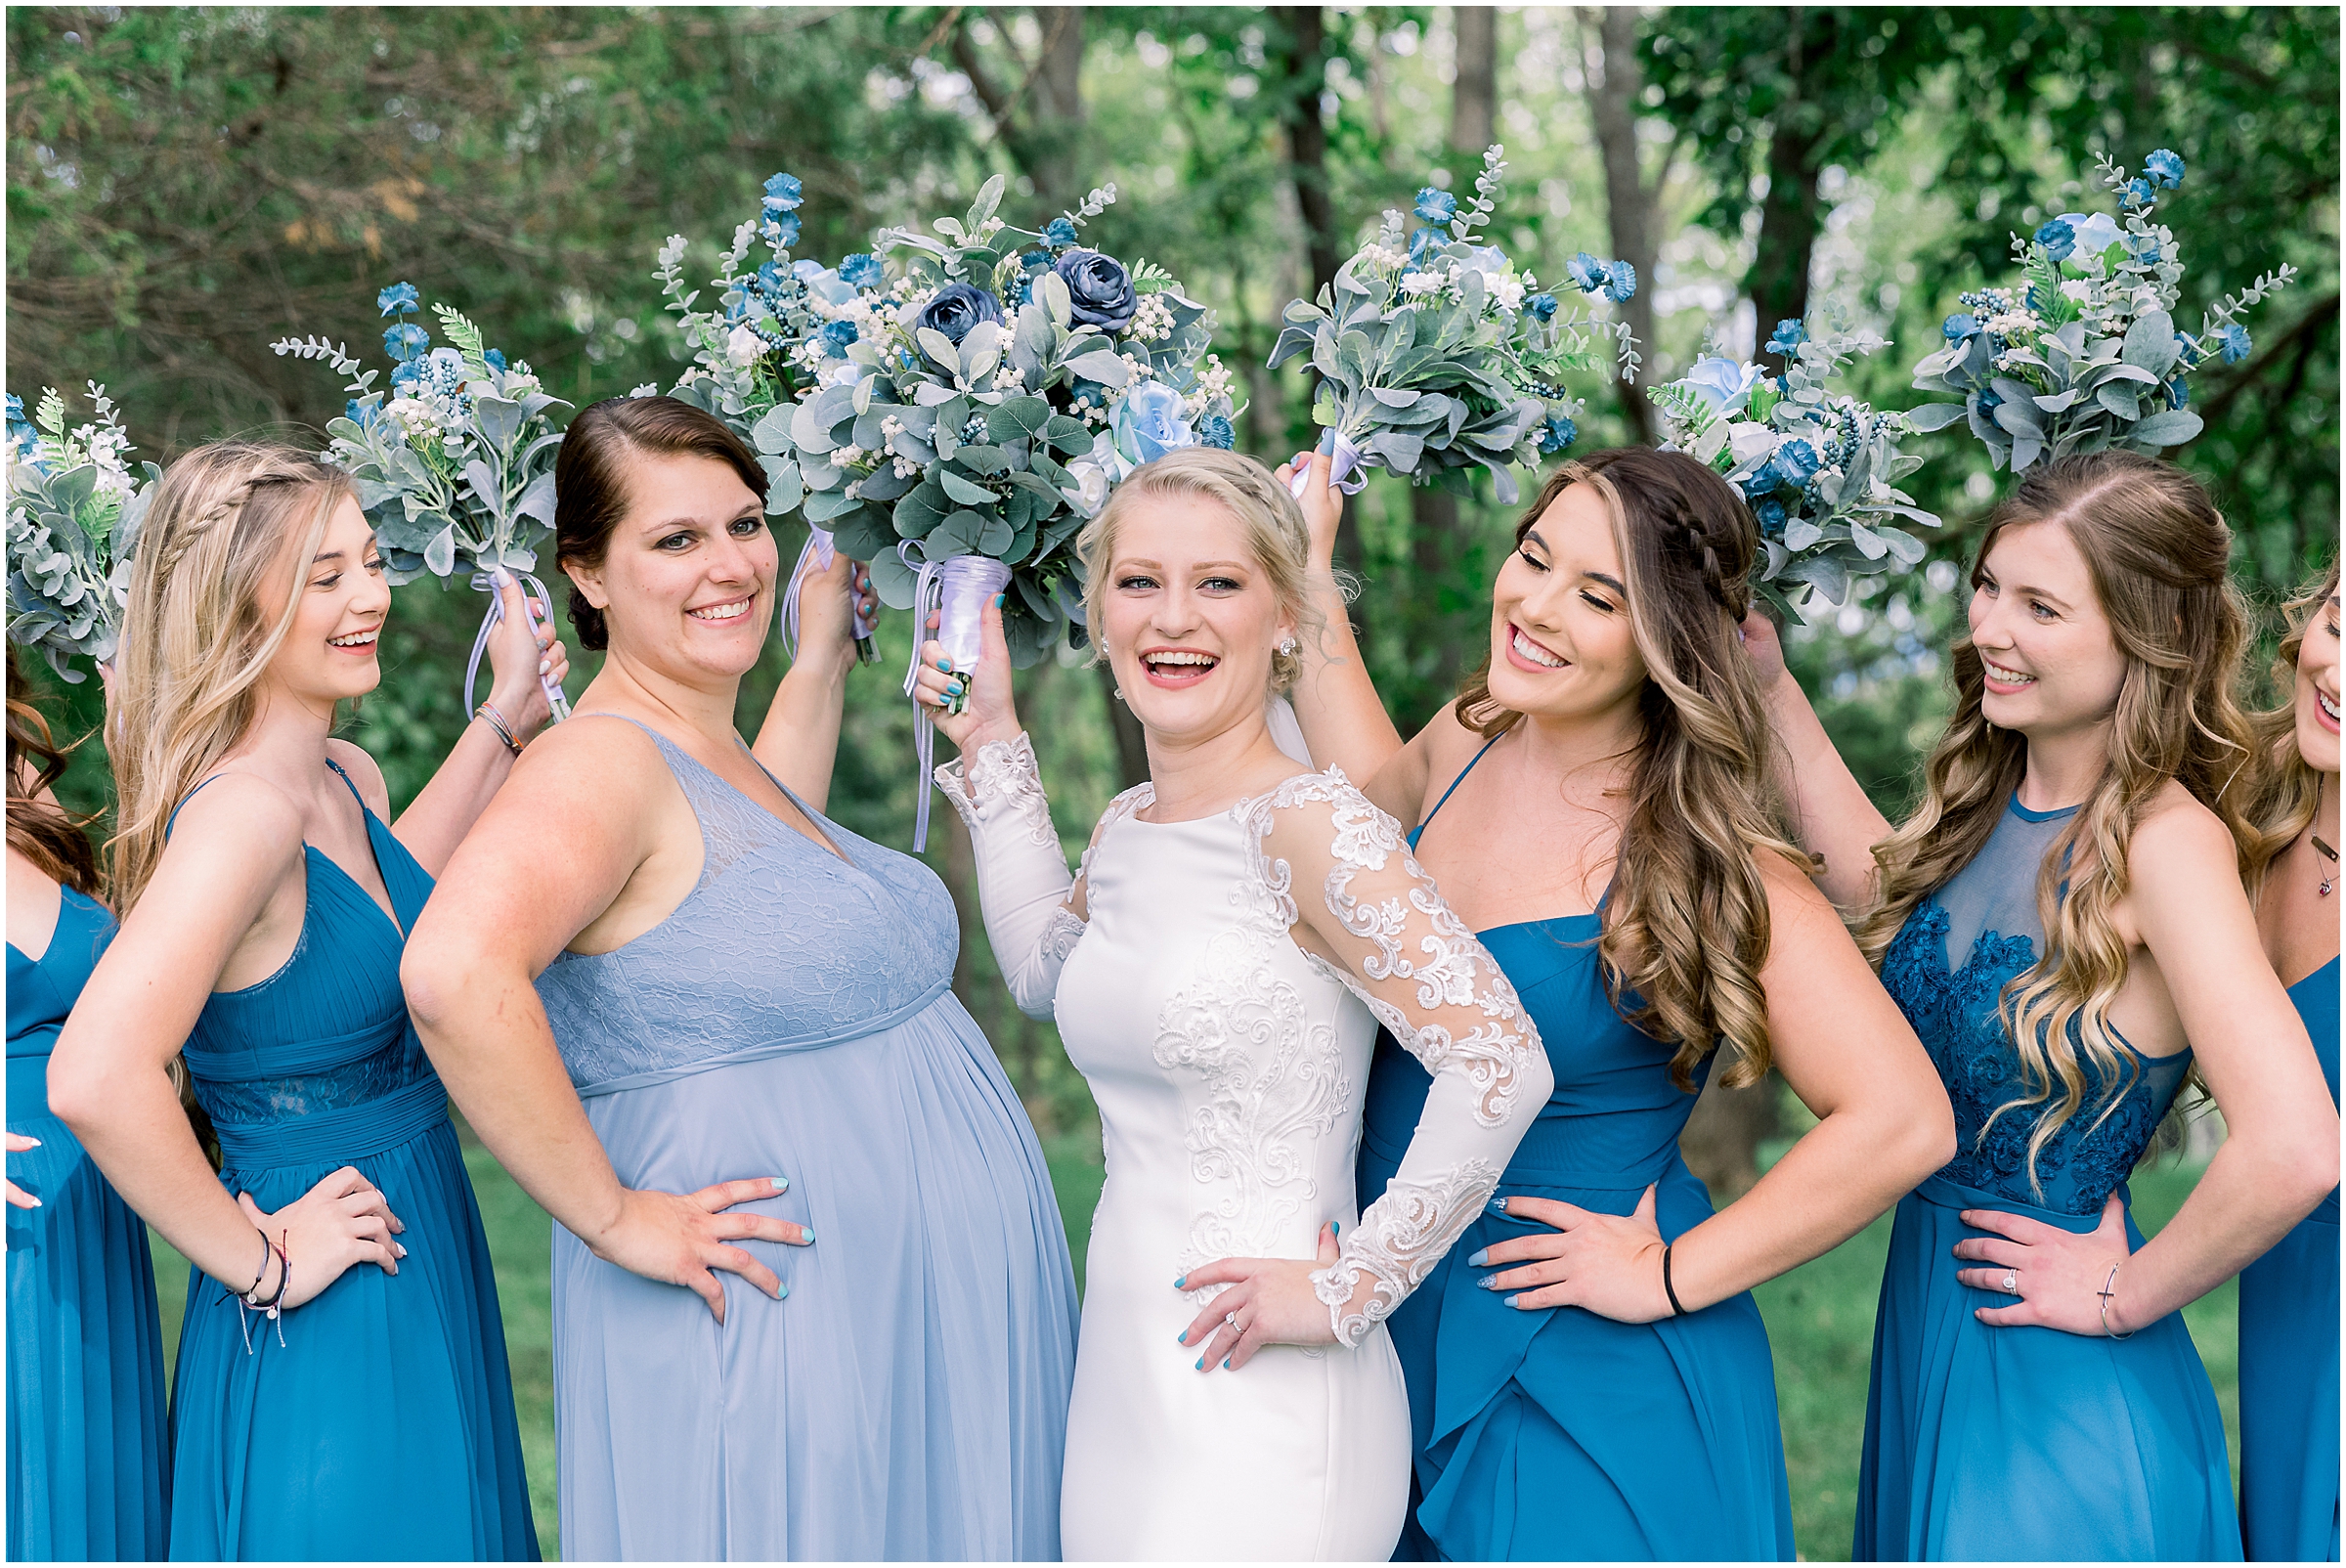 A beautiful dusty blue wedding